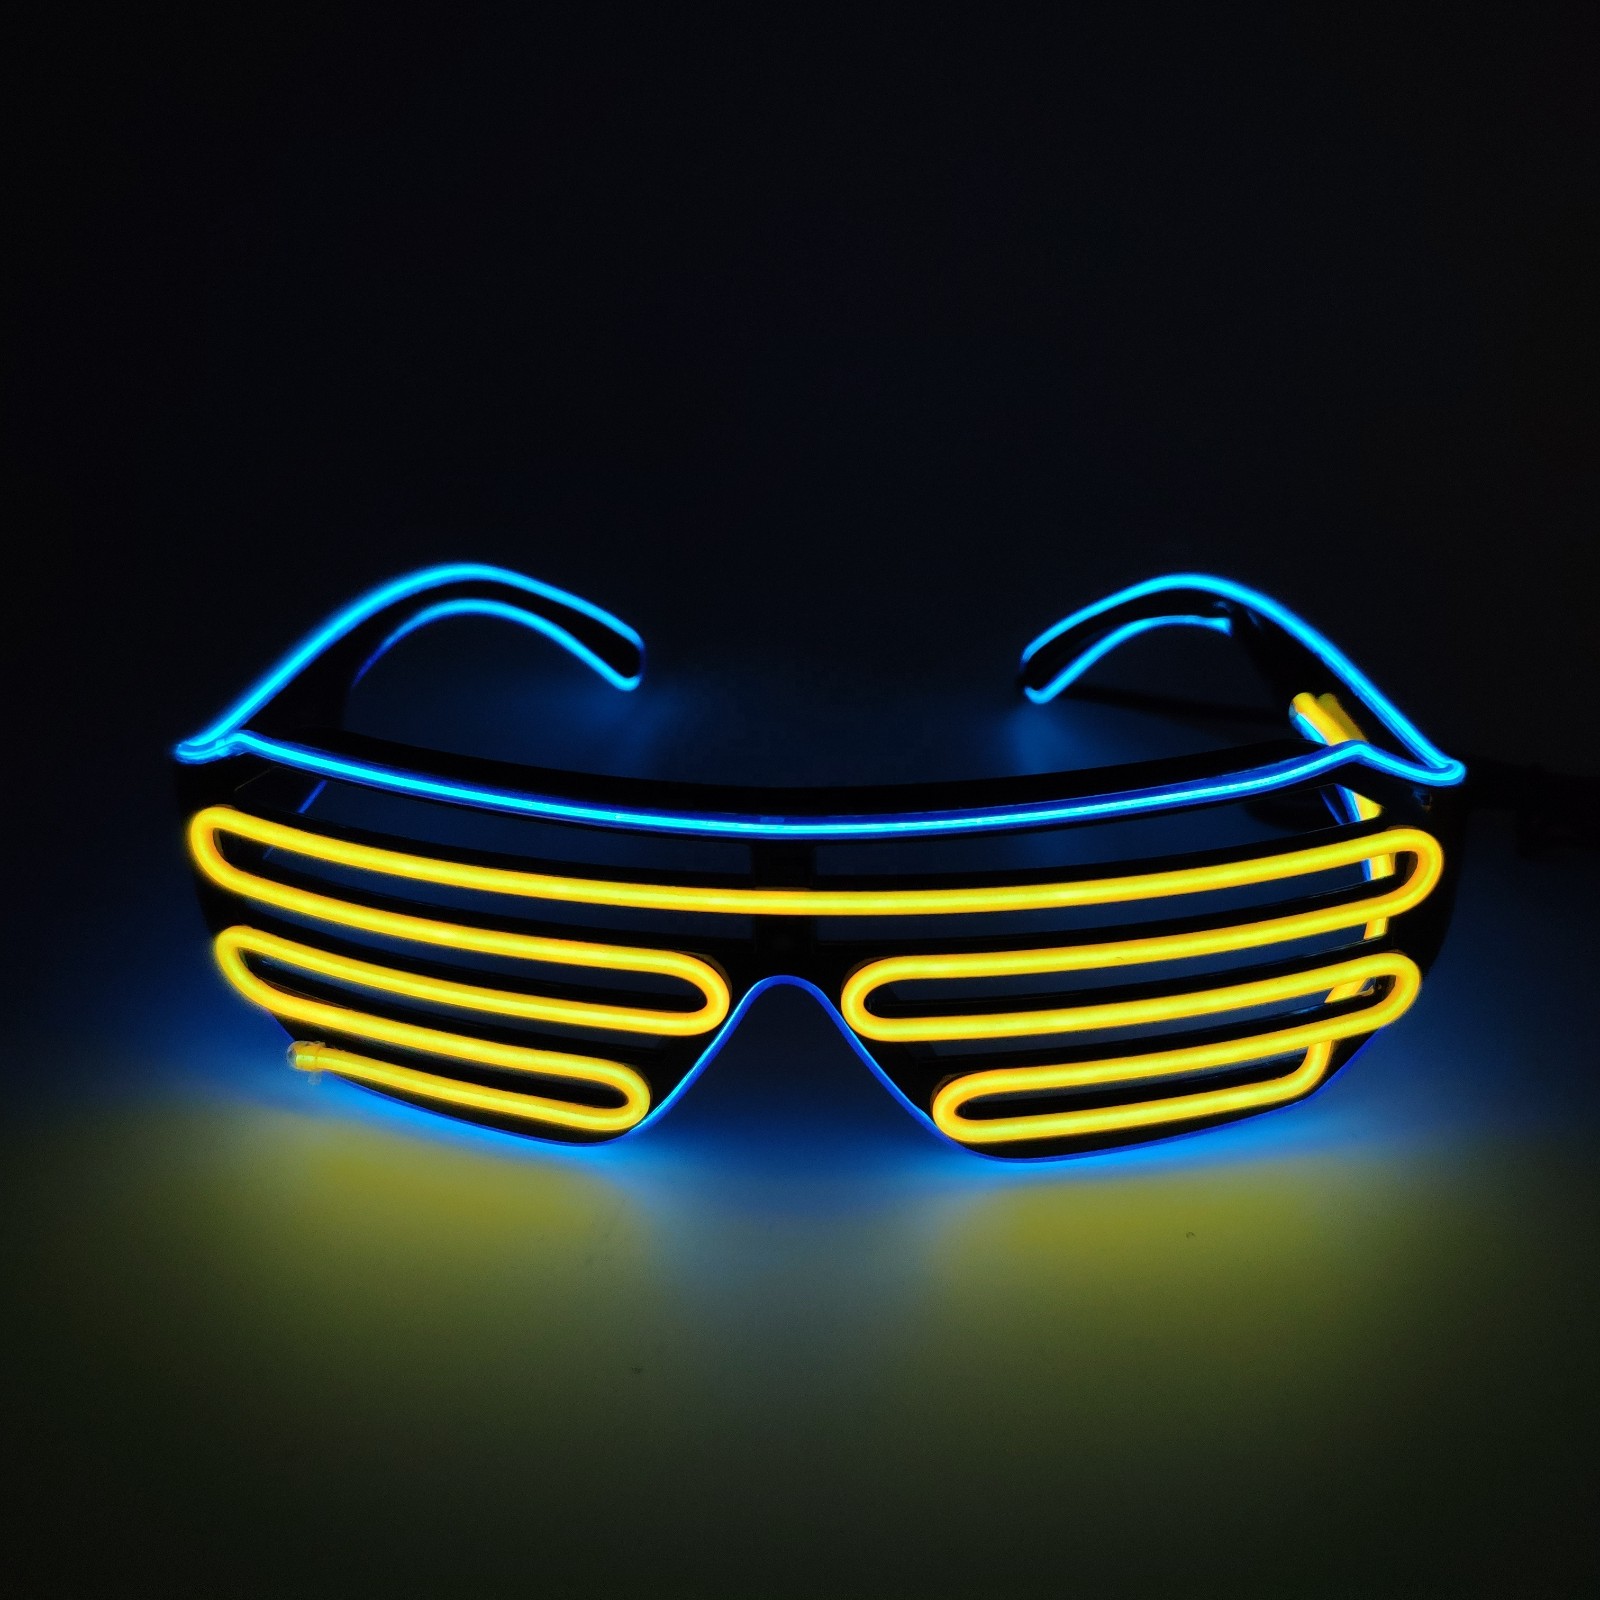 Concert rave el luminous neon light up sunglasses rechargeable led party glasses